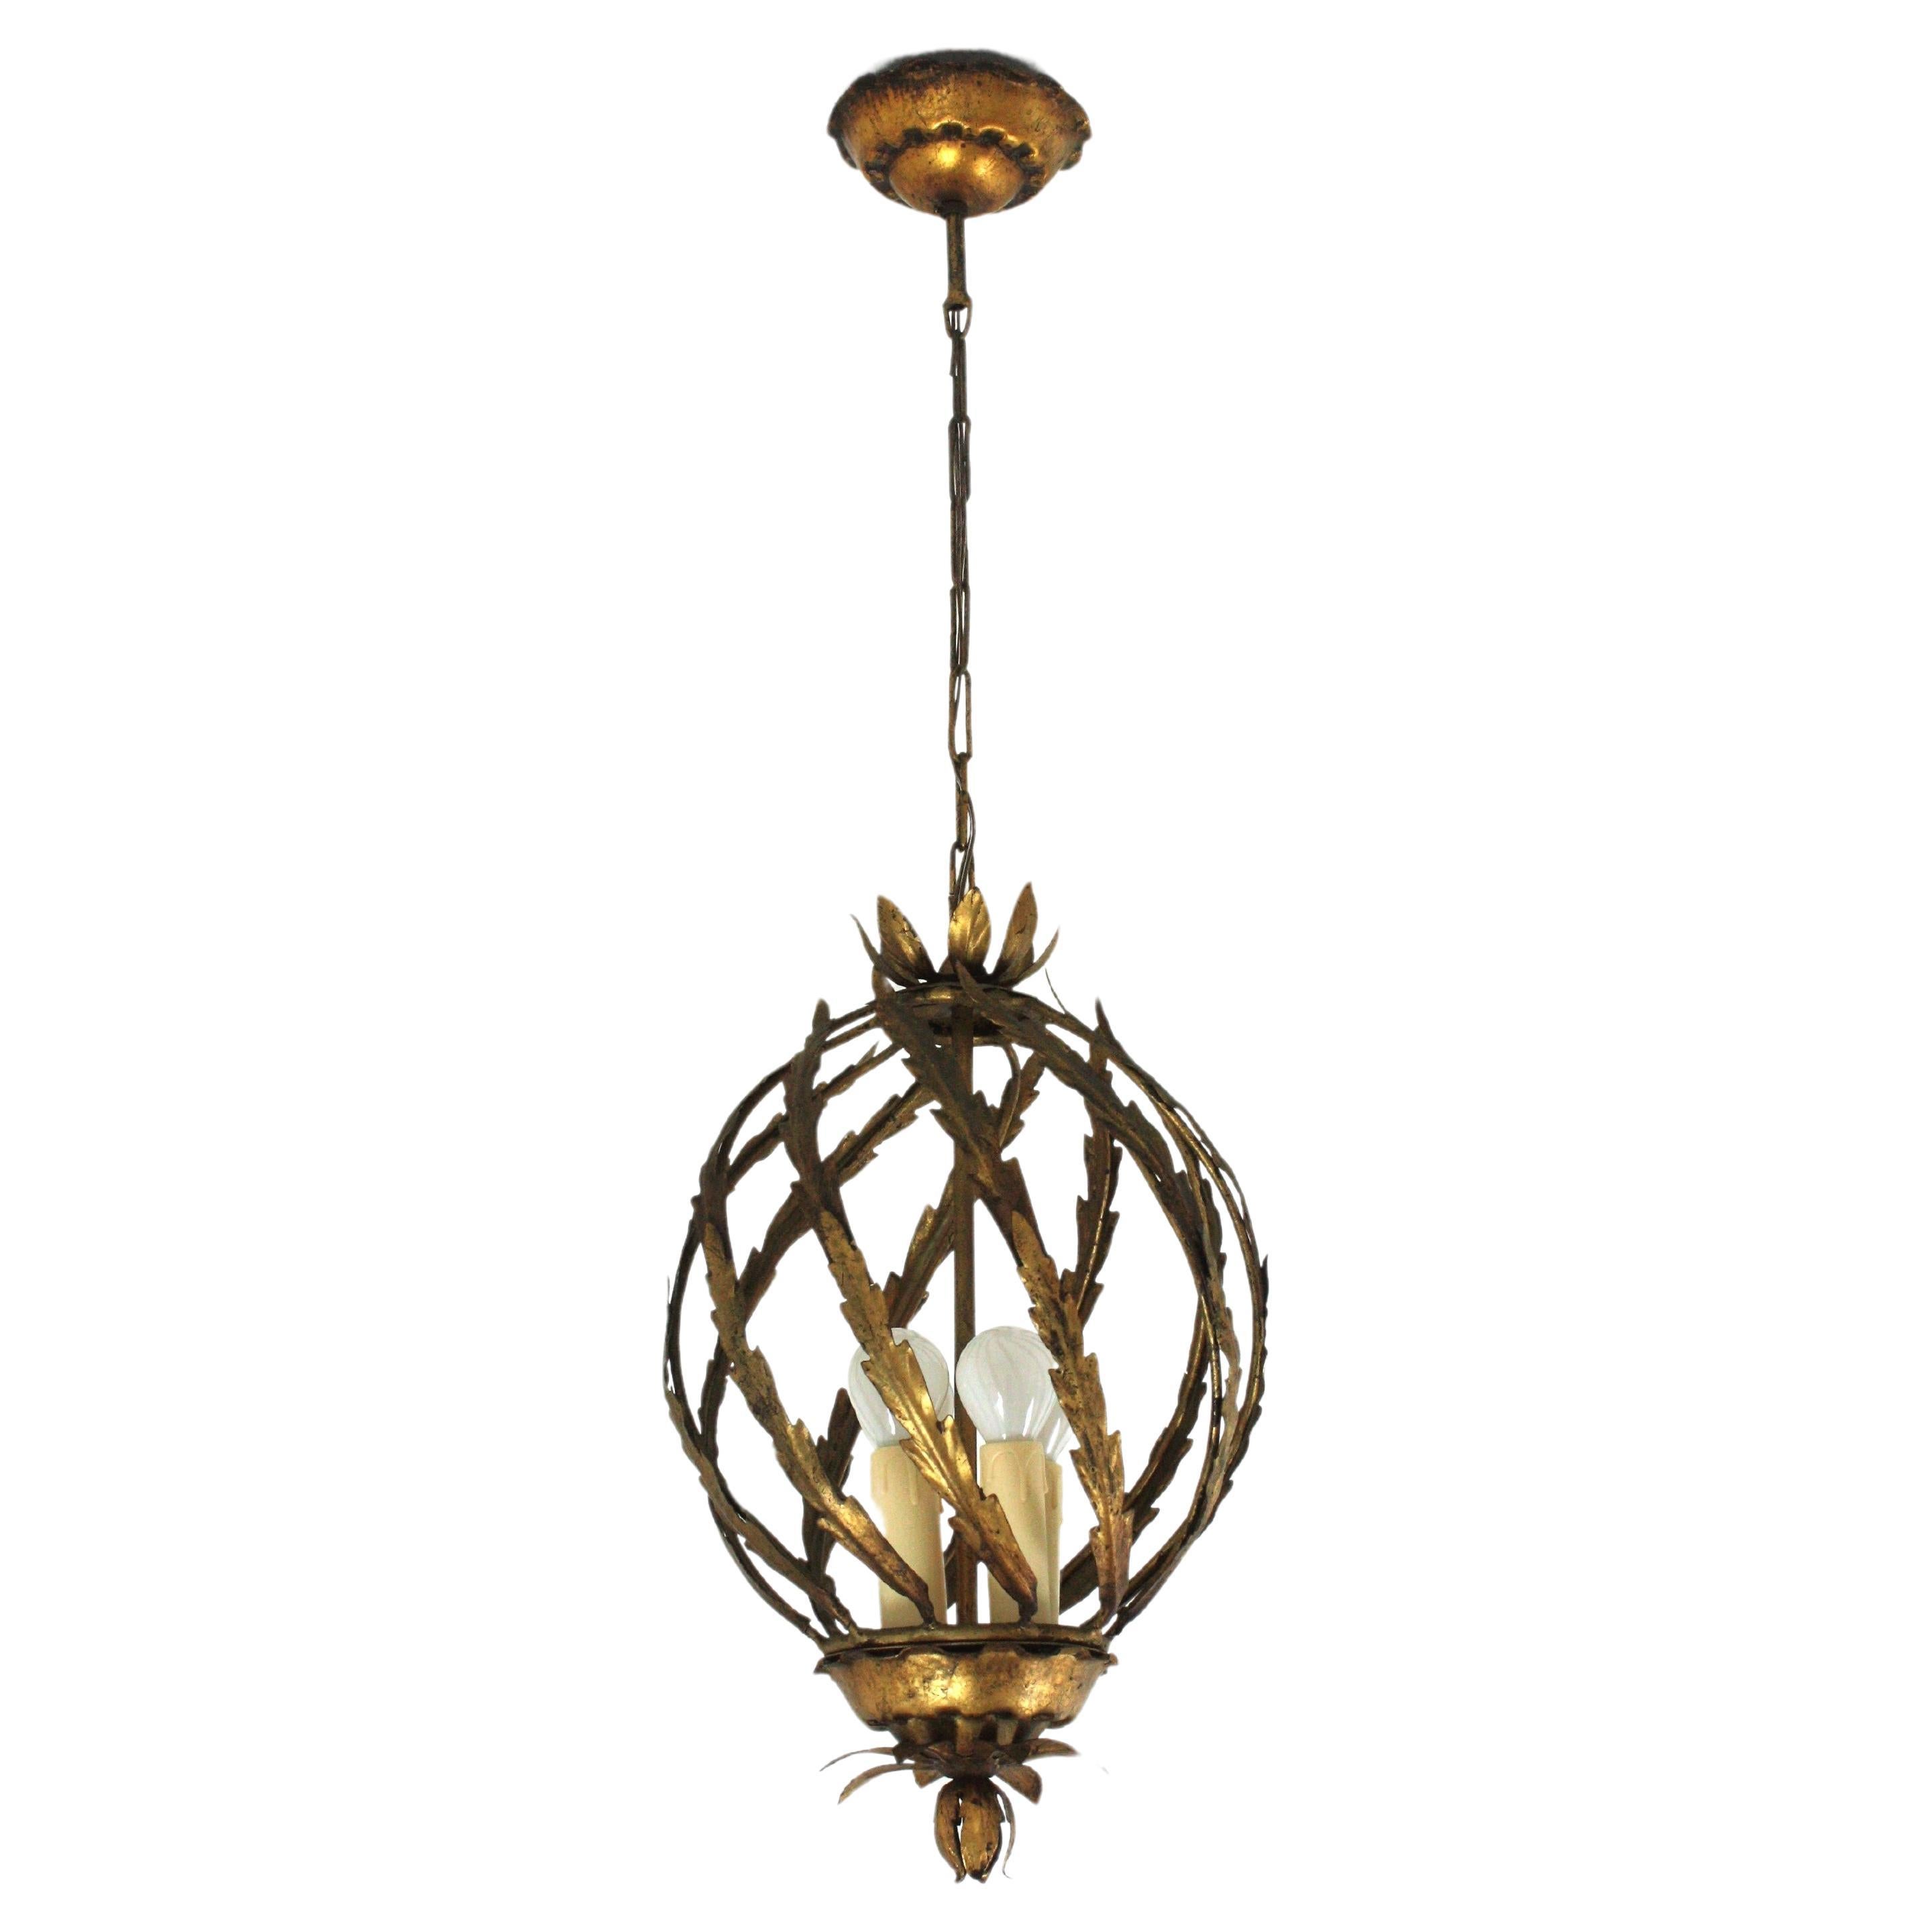 Spanish Hollywood Regency Pineapple Pendant Light or Lantern in Gilt Iron